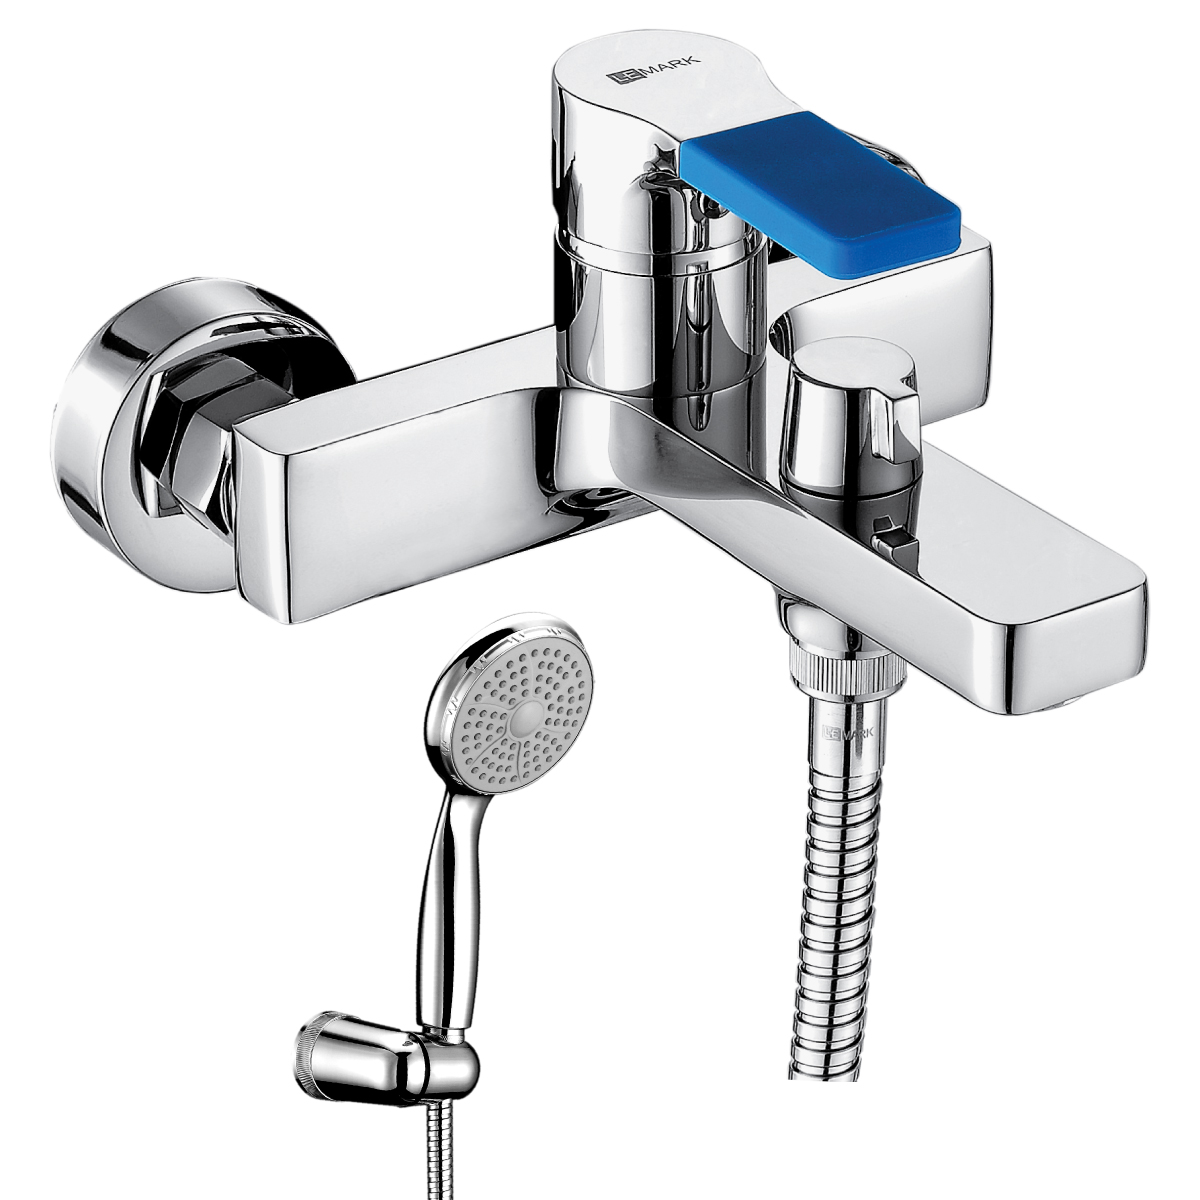 LM0614C Bath faucet